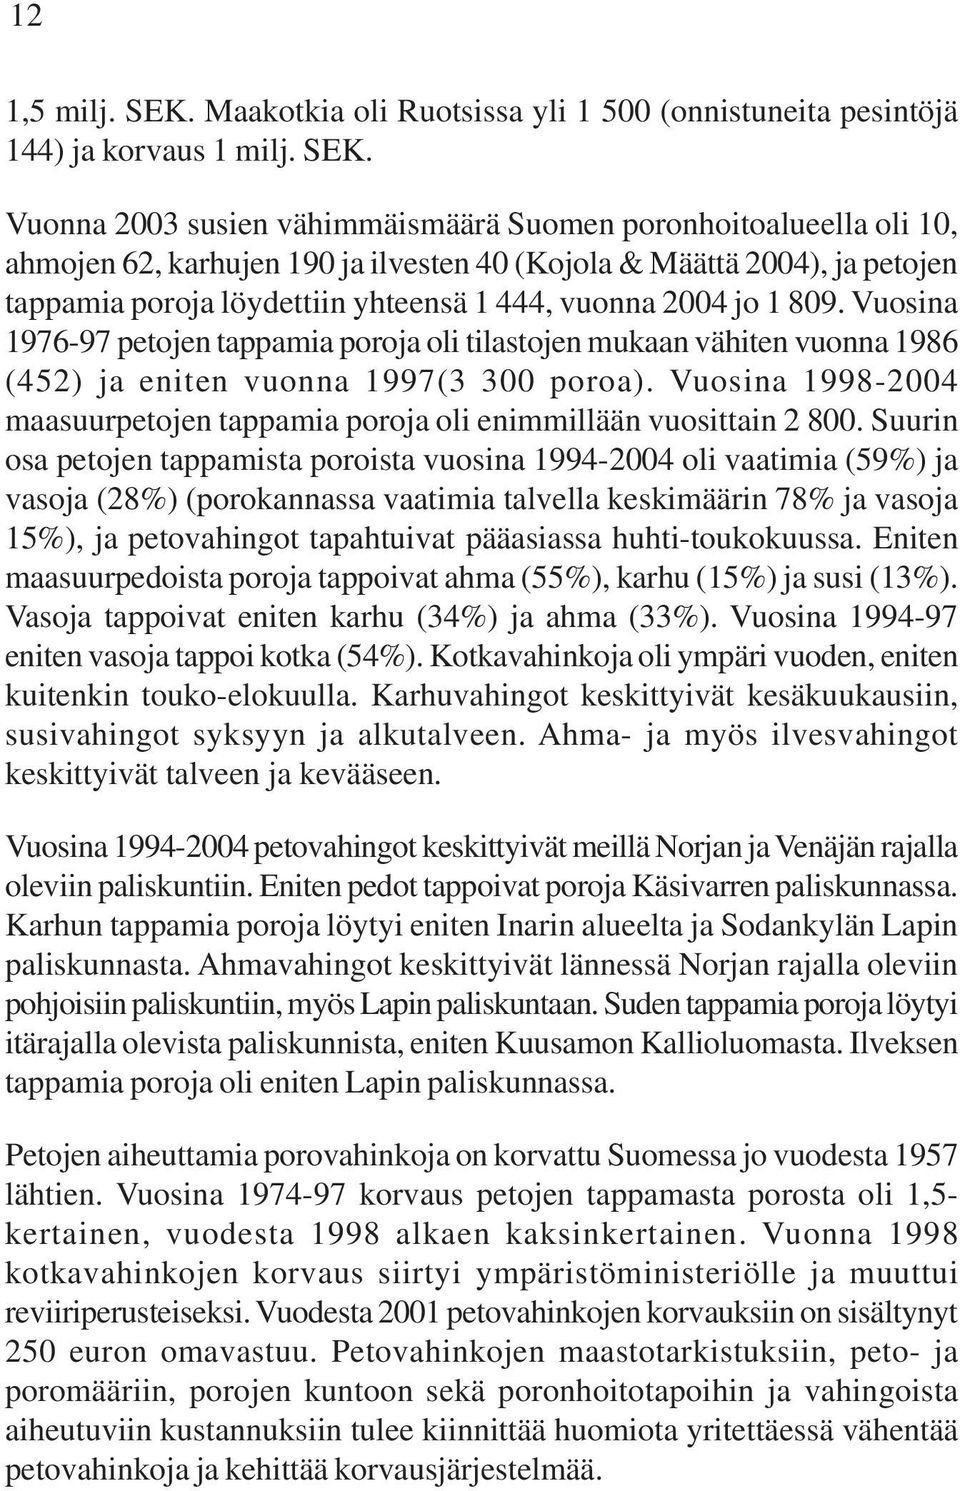 Vuonna 2003 susien vähimmäismäärä Suomen poronhoitoalueella oli 10, ahmojen 62, karhujen 190 ja ilvesten 40 (Kojola & Määttä 2004), ja petojen tappamia poroja löydettiin yhteensä 1 444, vuonna 2004